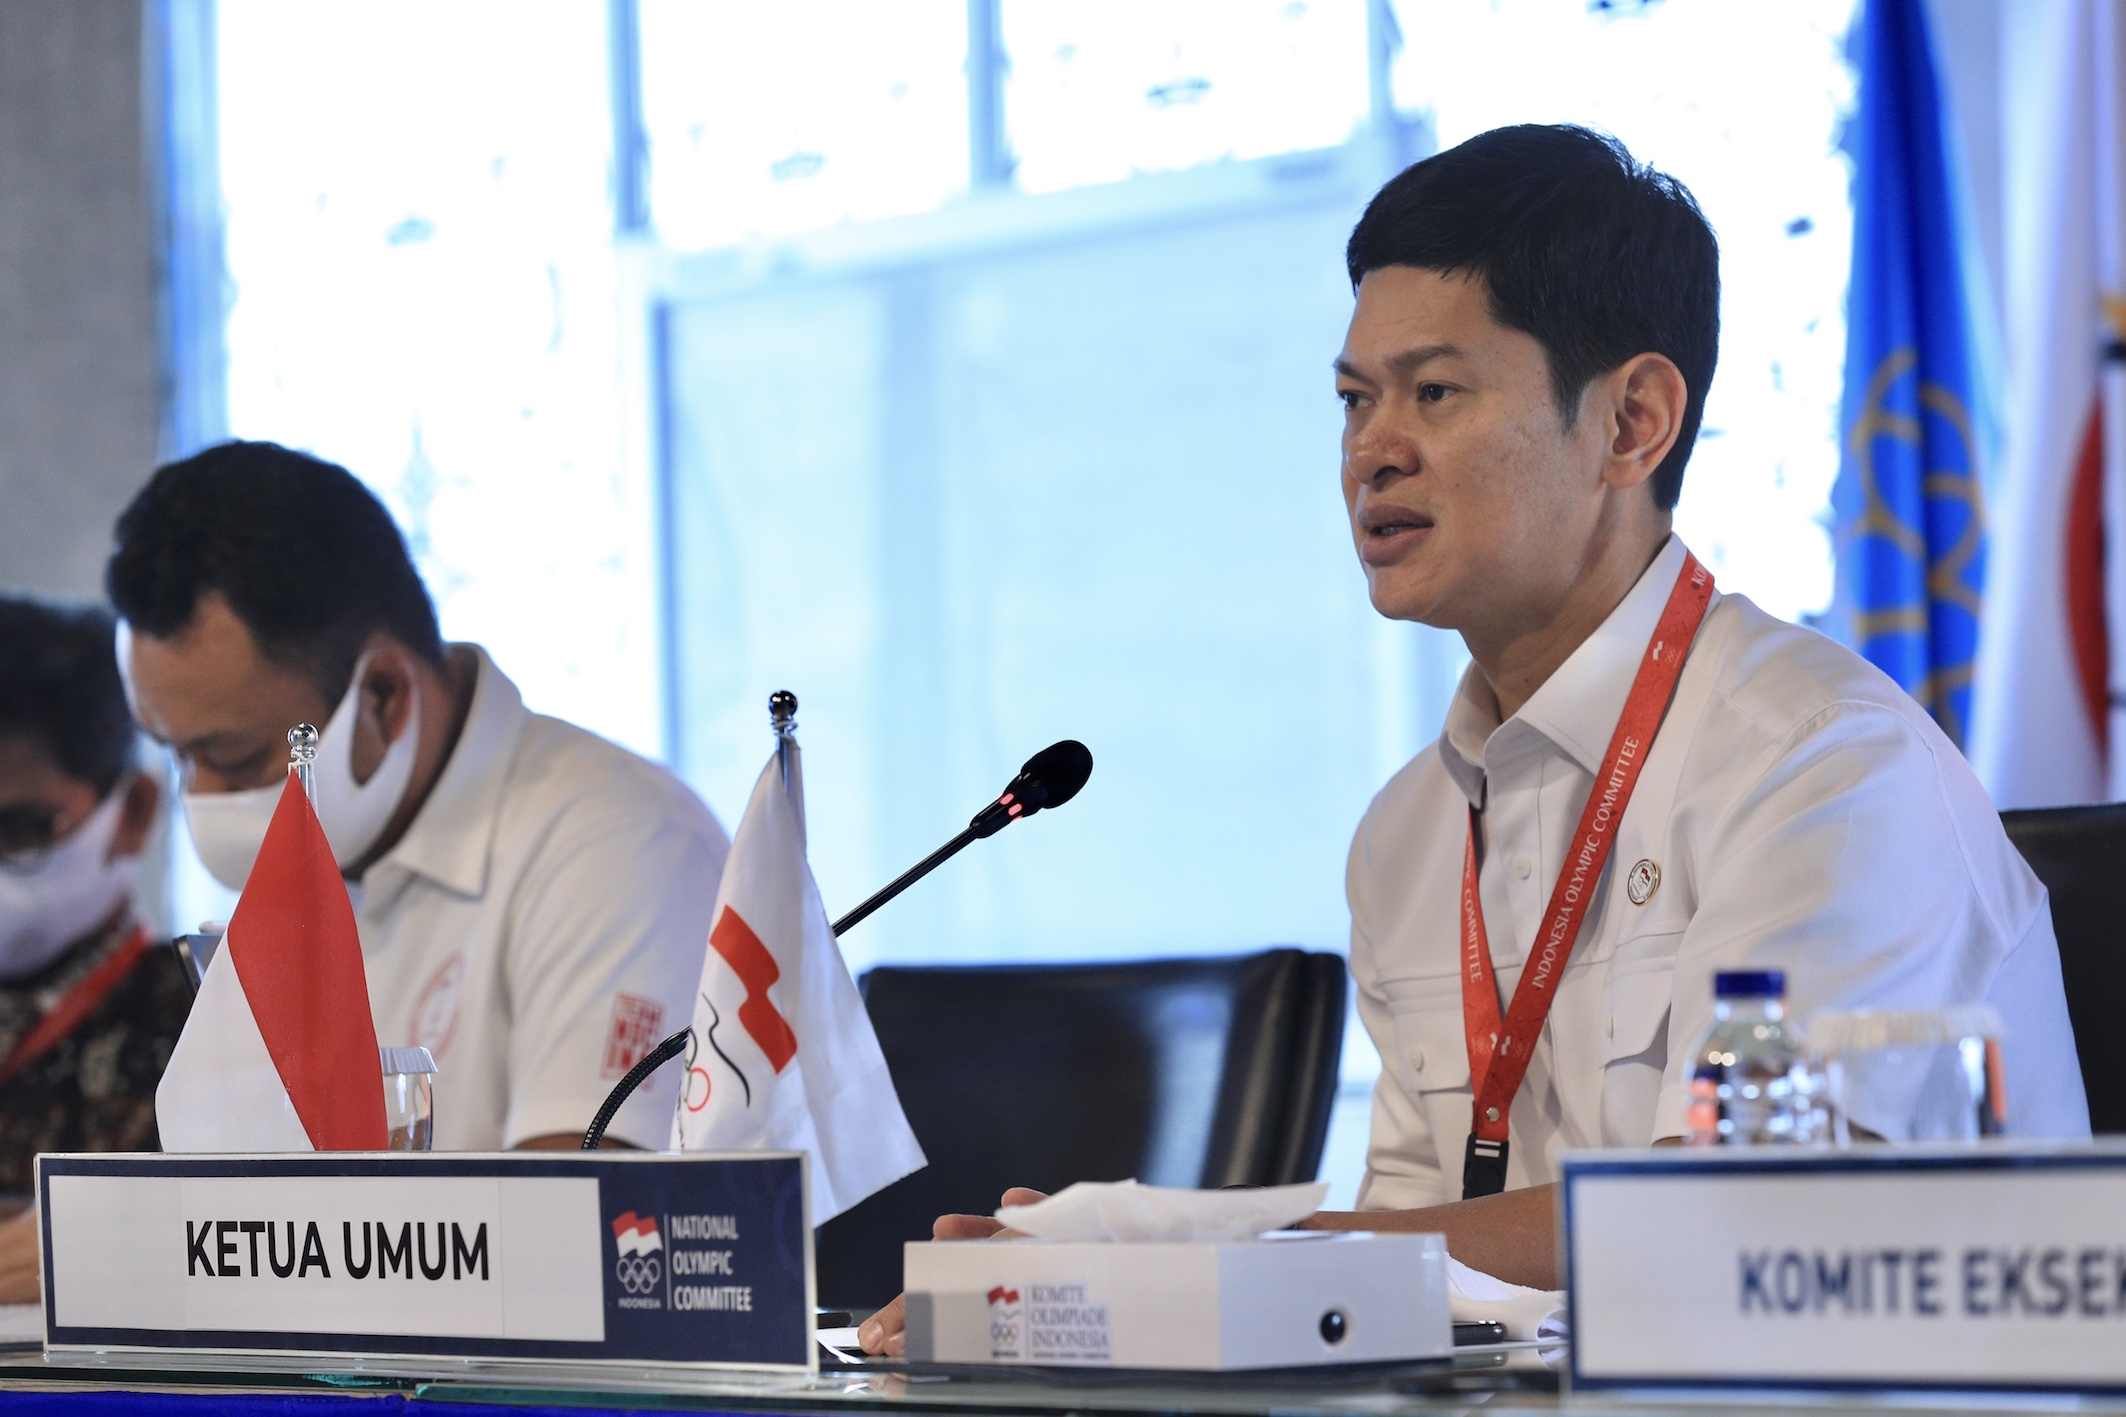 Ketua NOC Indonesia Beberkan Posisi Indonesia Dalam Bidding Olimpiade 2032